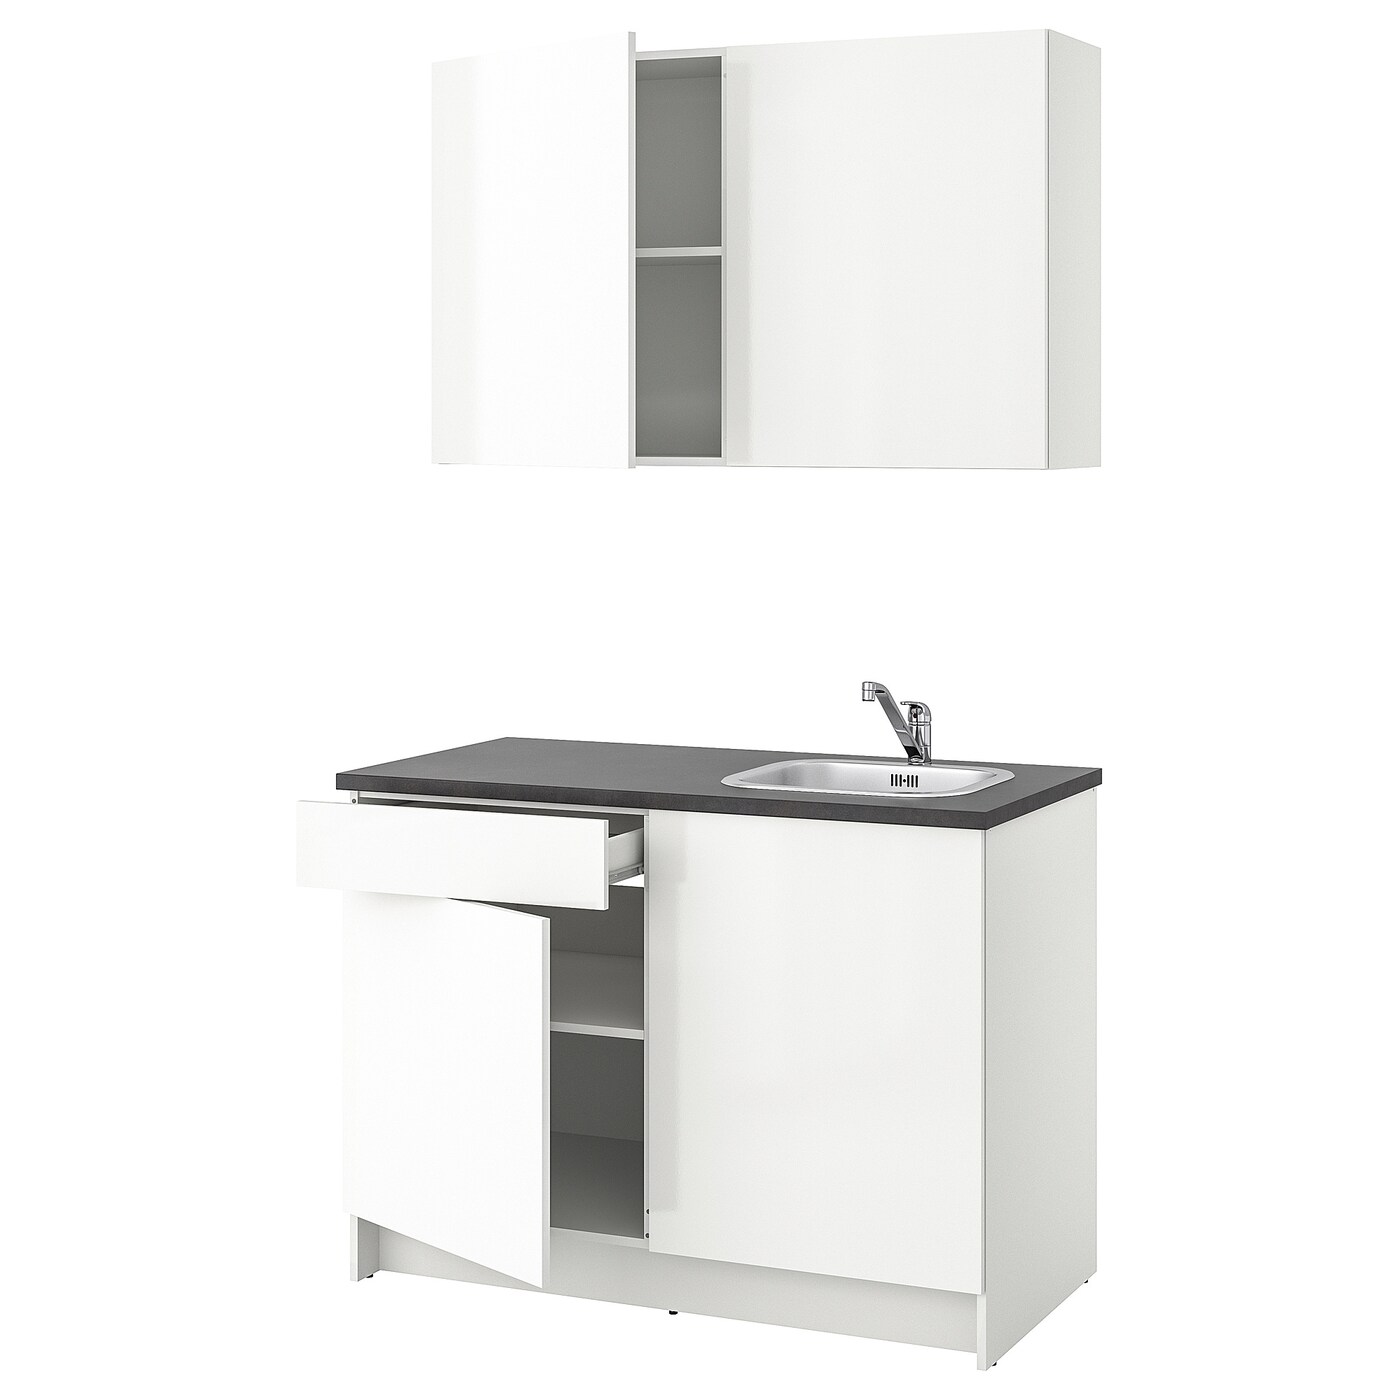 Кухонная комбинация для хранения вещей - KNOXHULT IKEA/ КНОКСХУЛЬТ ИКЕА, 120x61x220 см, серый/белый